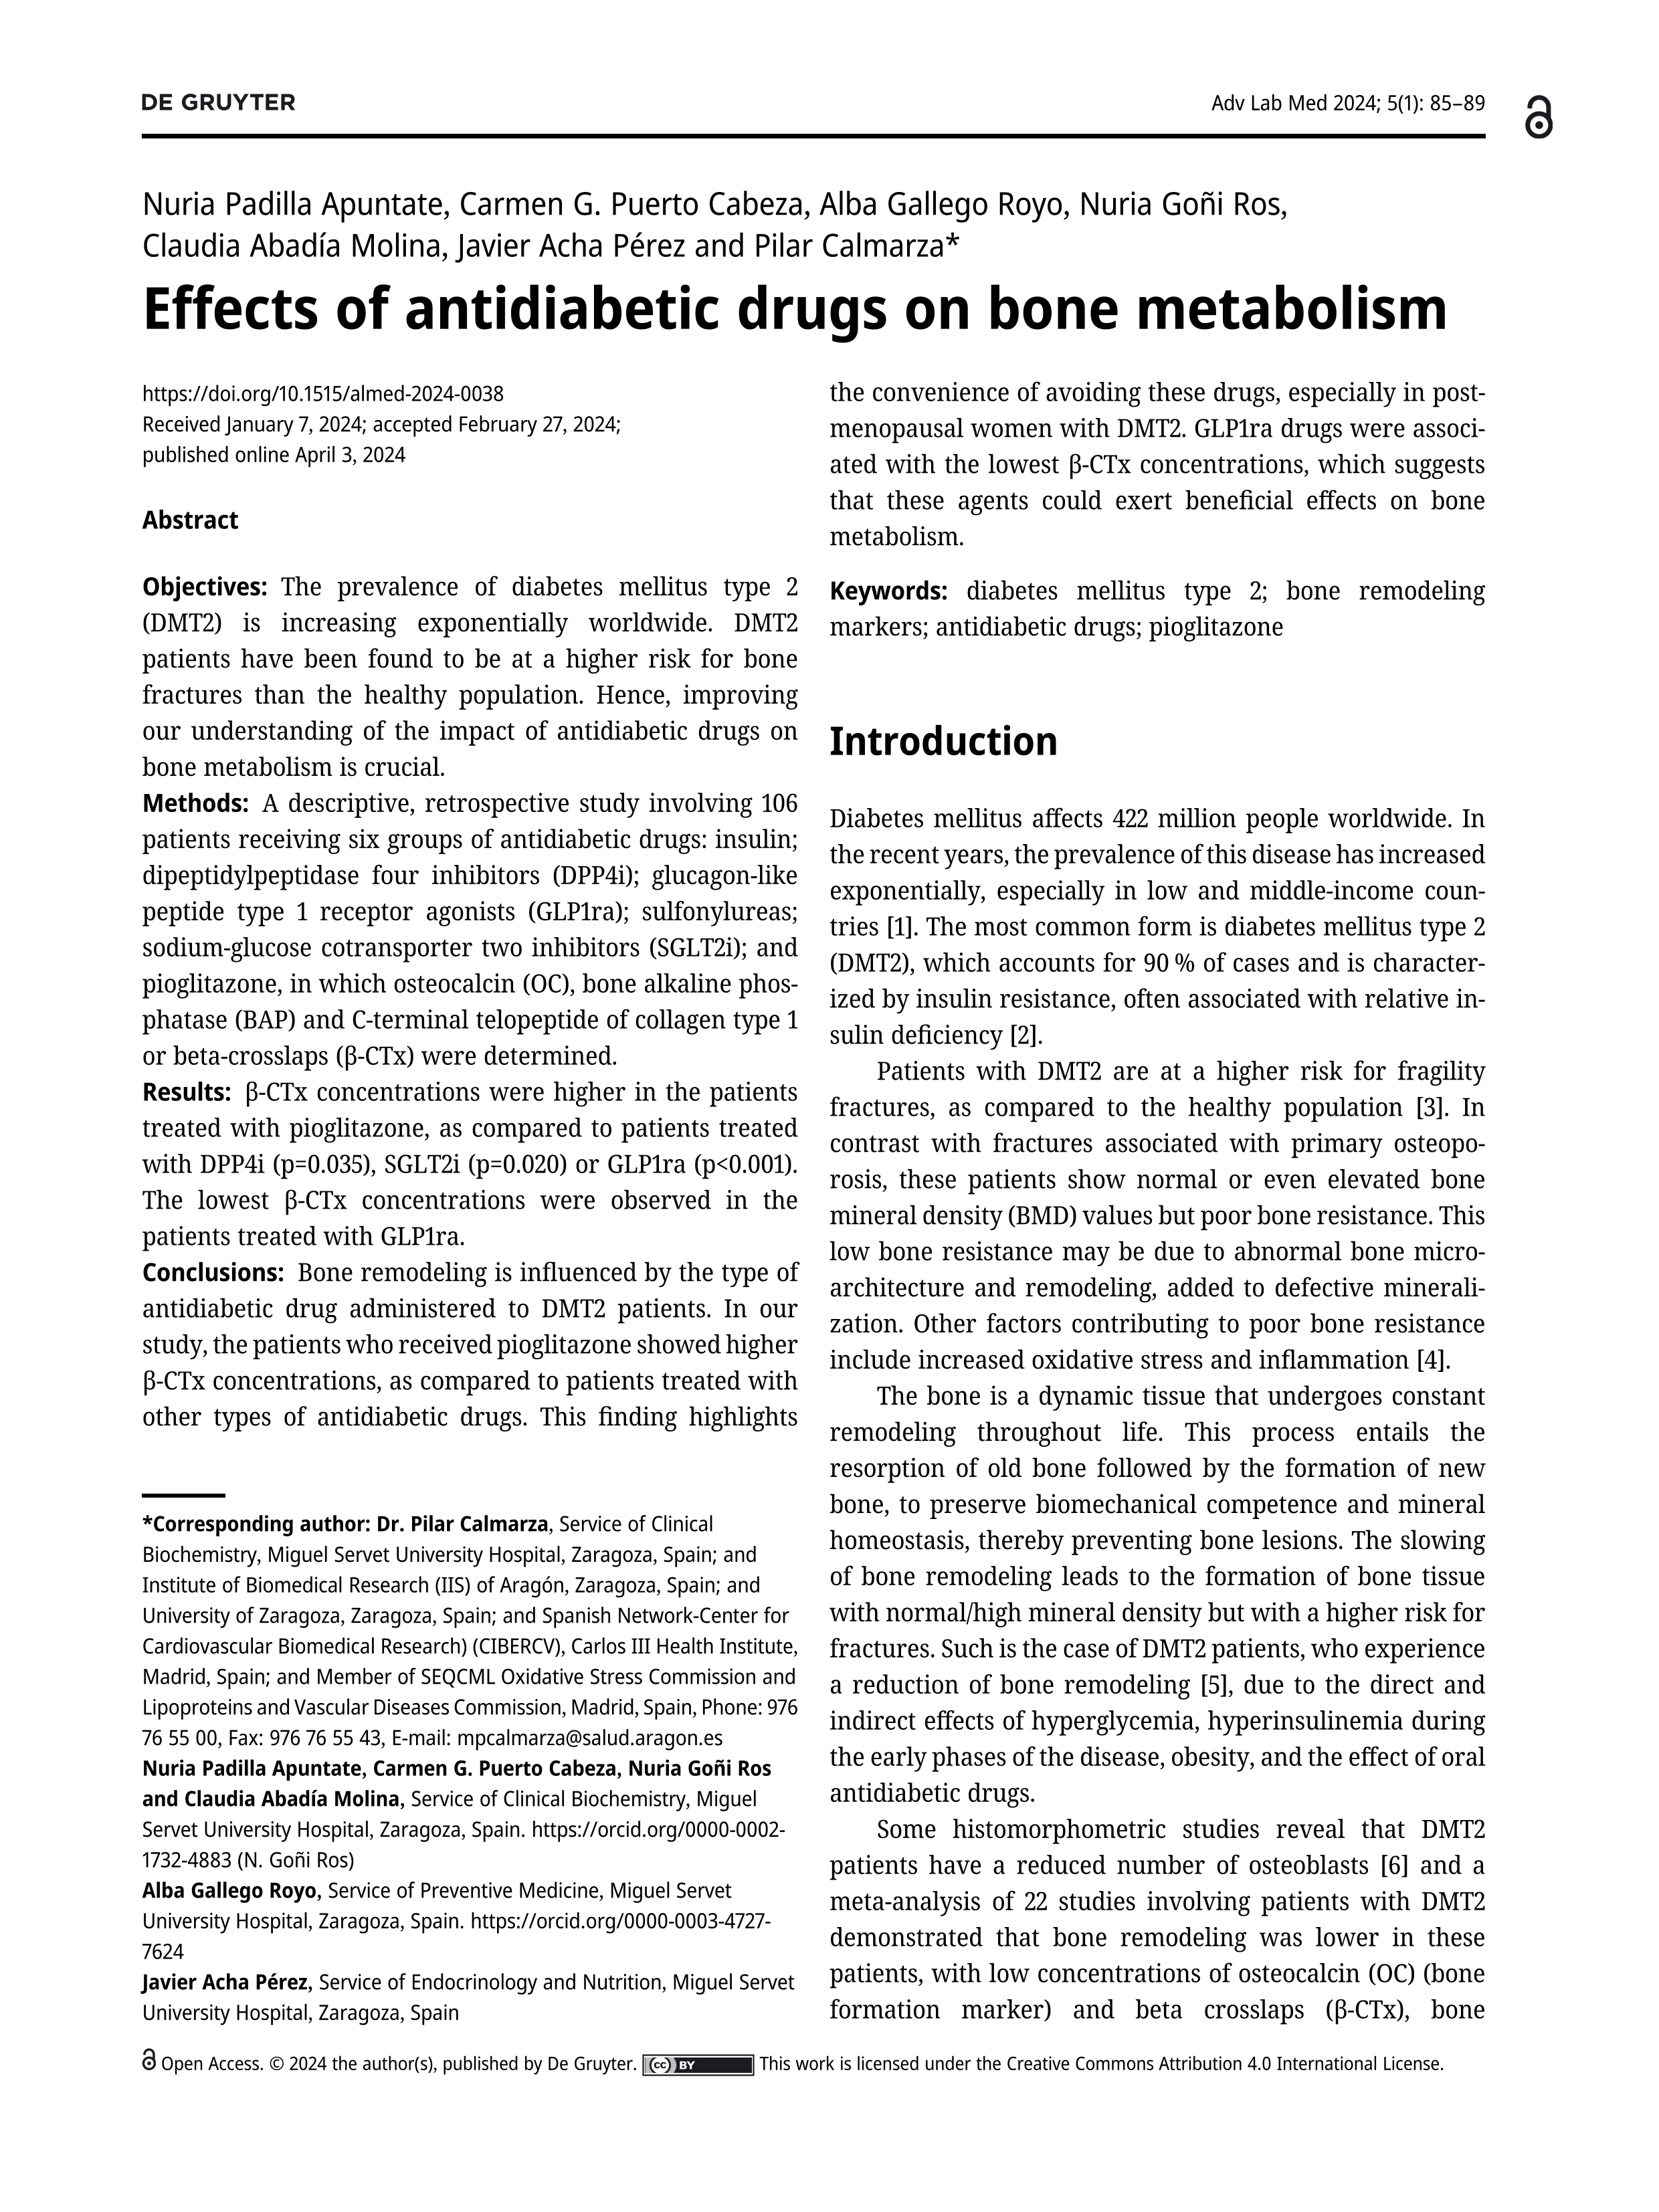 Effects of antidiabetic drugs on bone metabolism